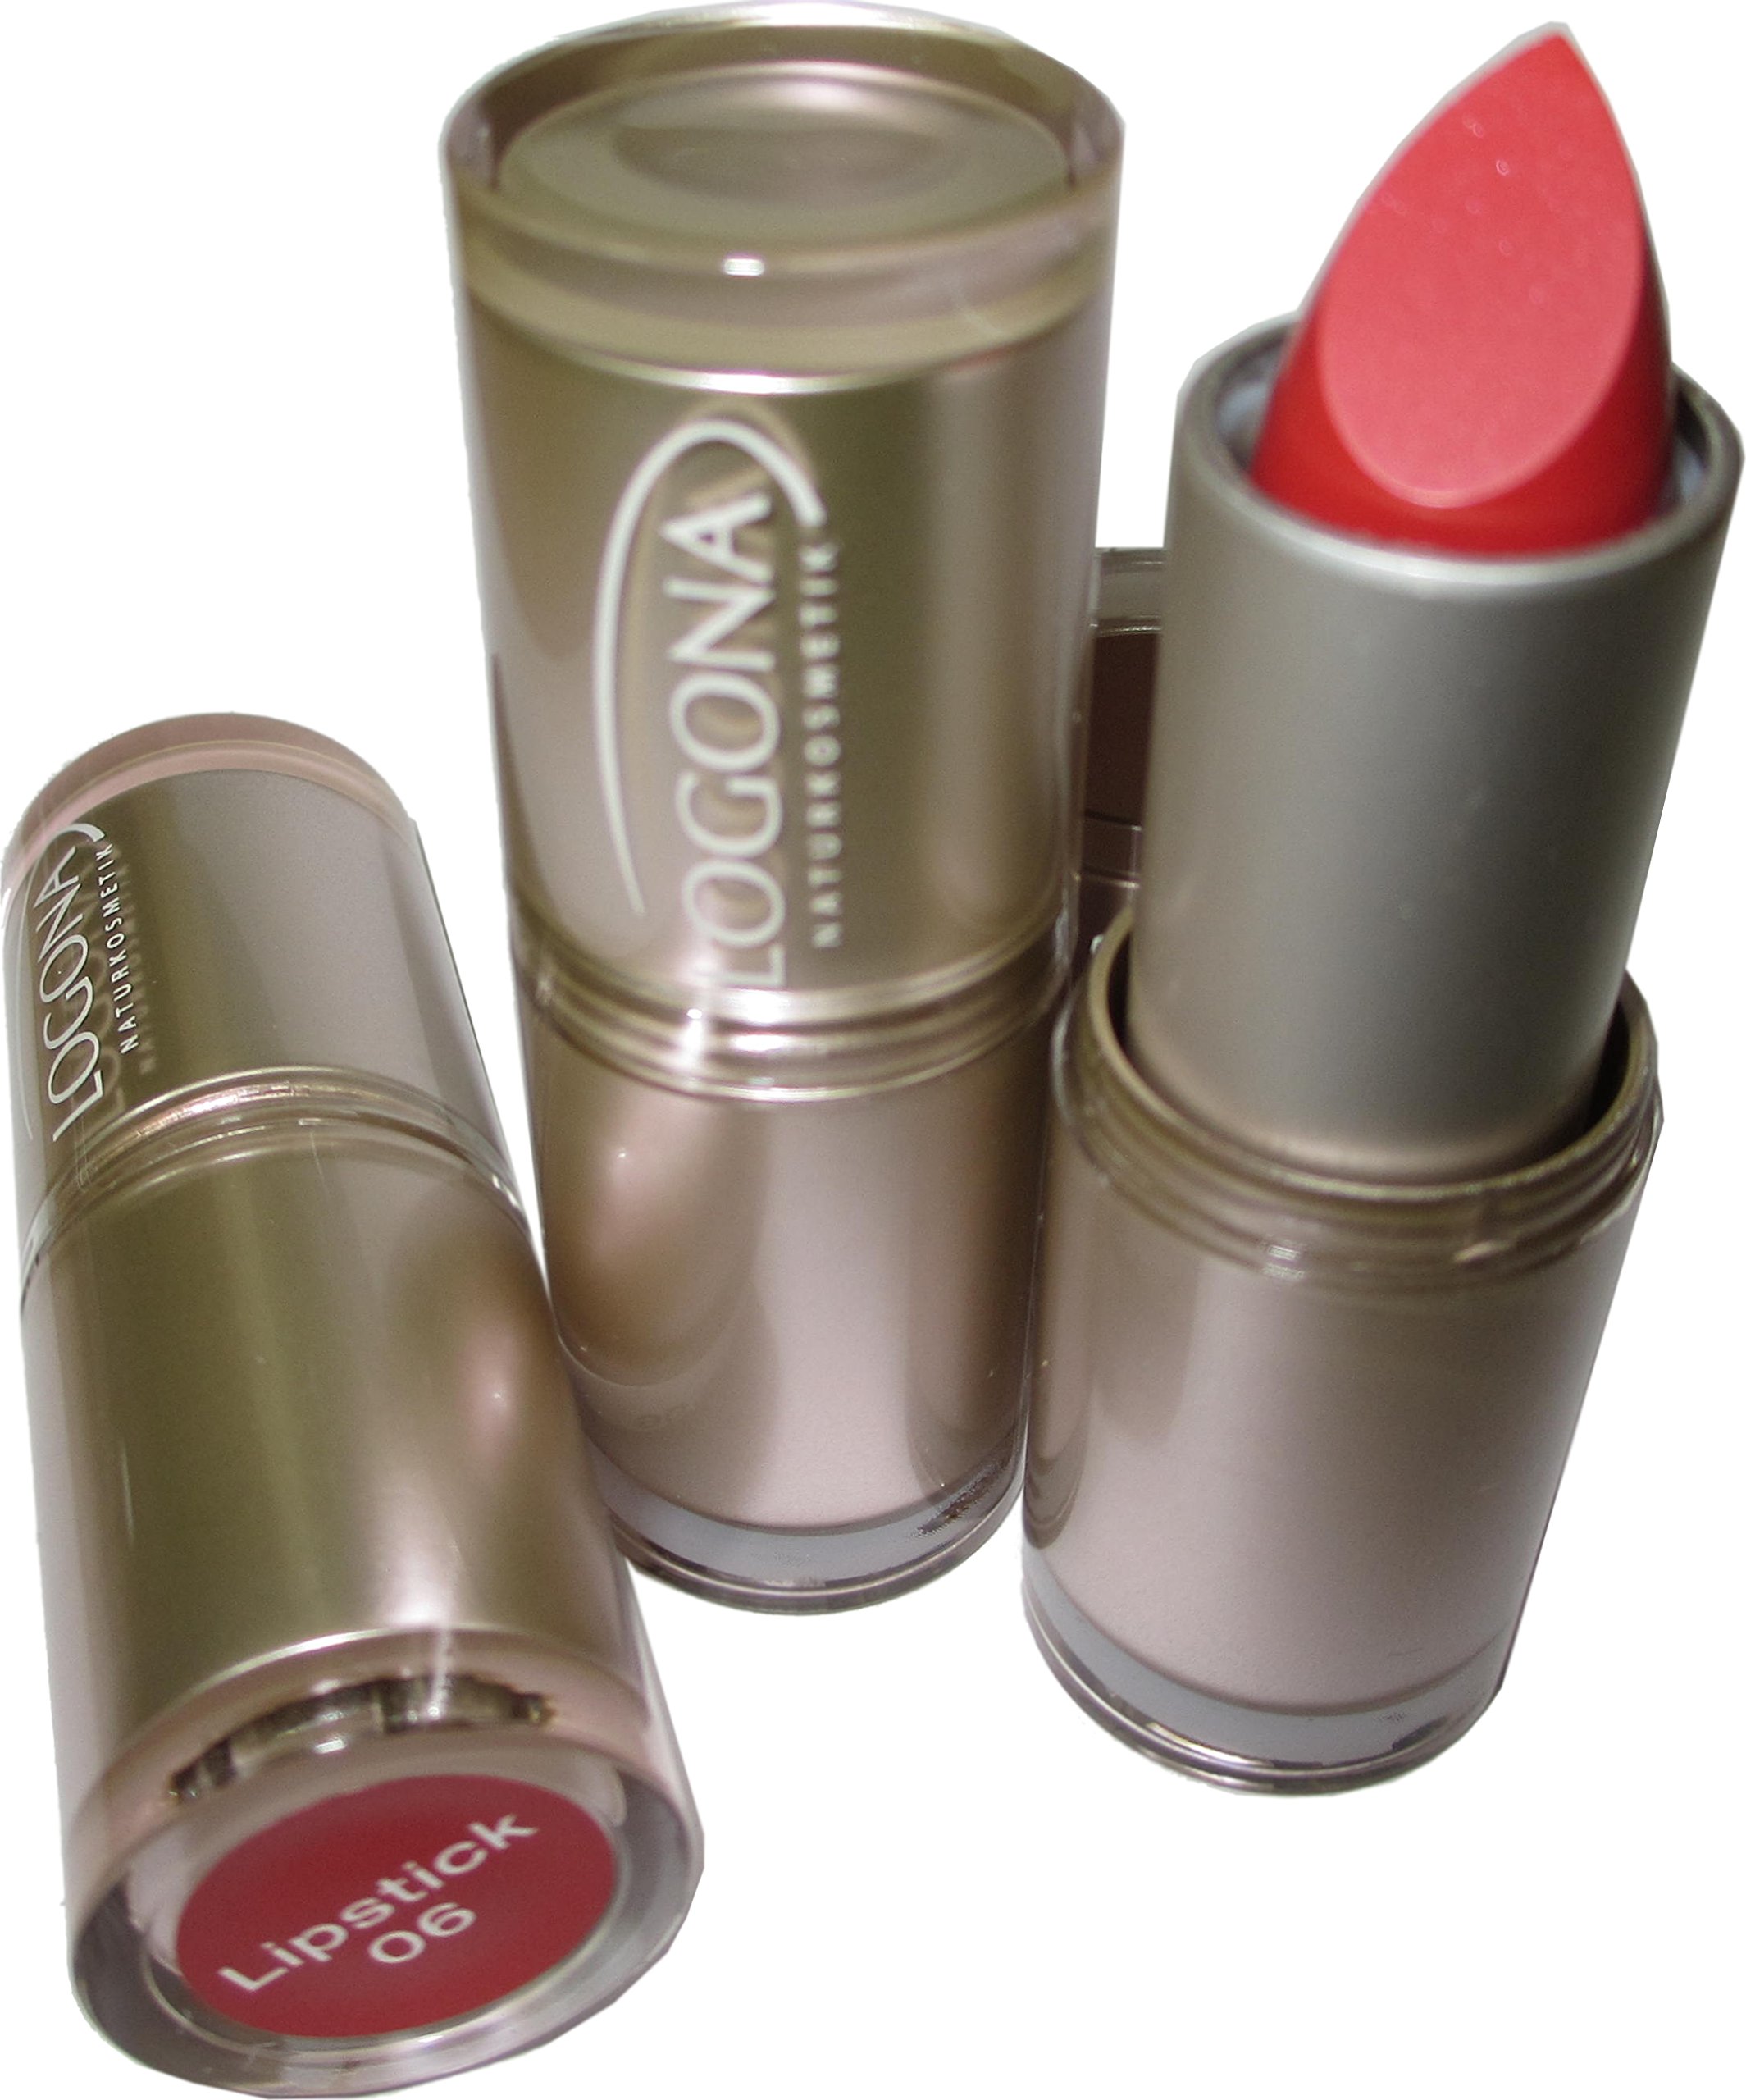 Logona Lipstick/Lippenstift 3er Set (Coral)